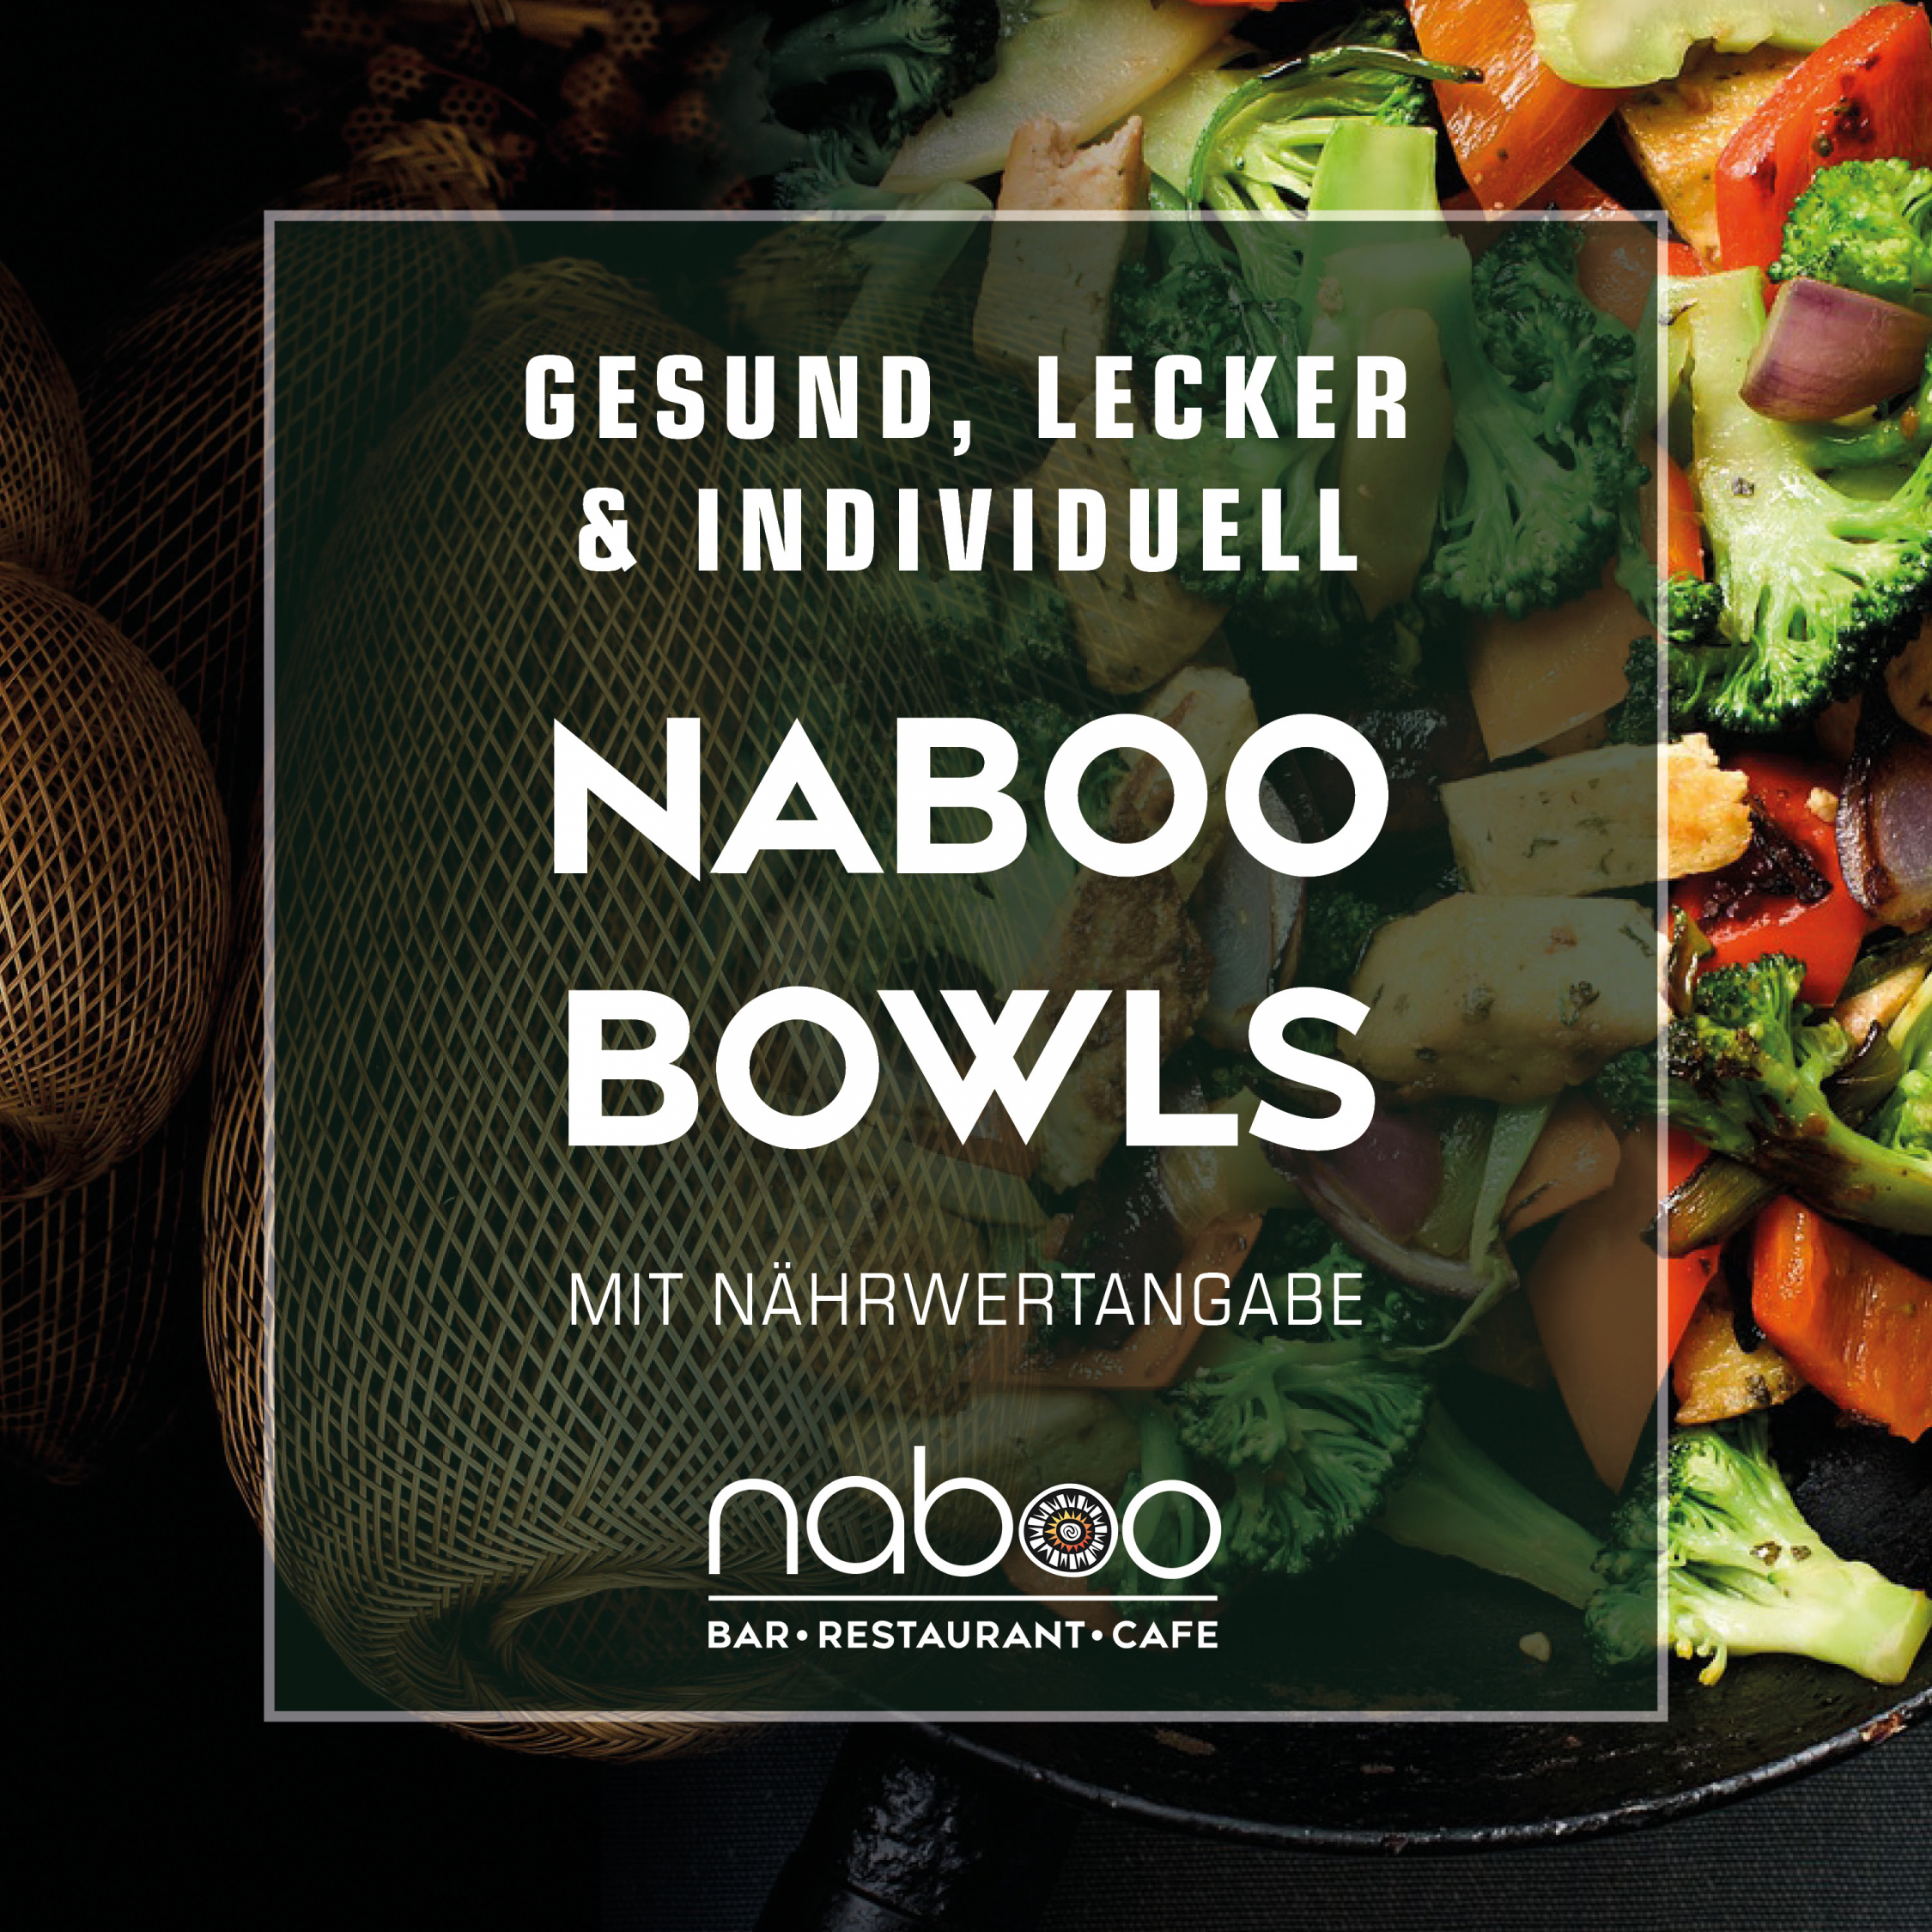 Ein Bild einer gesunden Bowl, bestehend aus frischem Gemüse, zartem Tofu und duftendem Reis. Diese Bowl steht symbolisch für eine große Auswahl an verschiedenen Bowls.